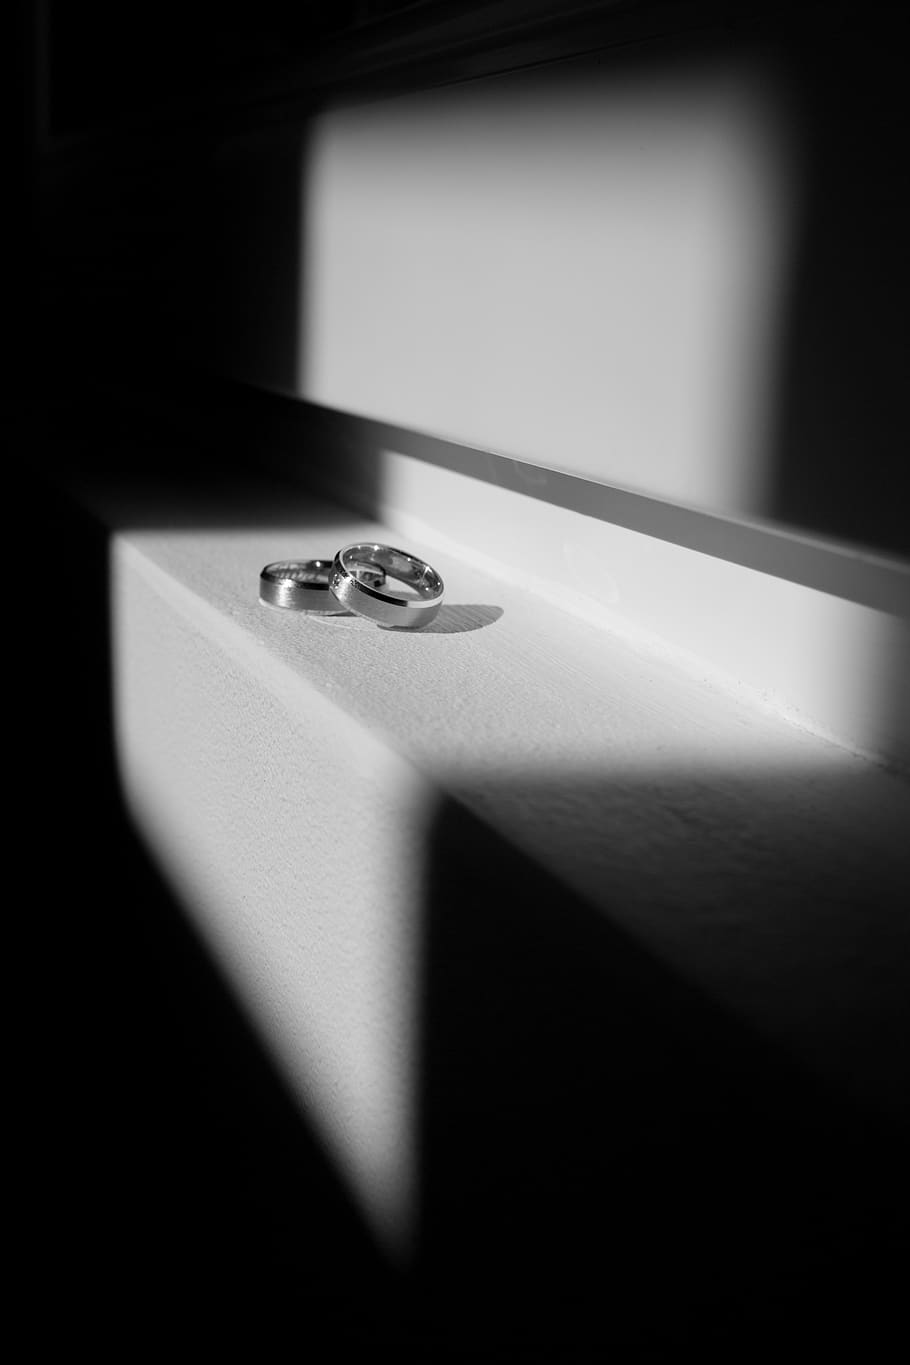 sombra, boda, anillo de bodas, novia, matrimonio, mono, anillos de bodas, oro, romance, ceremonia